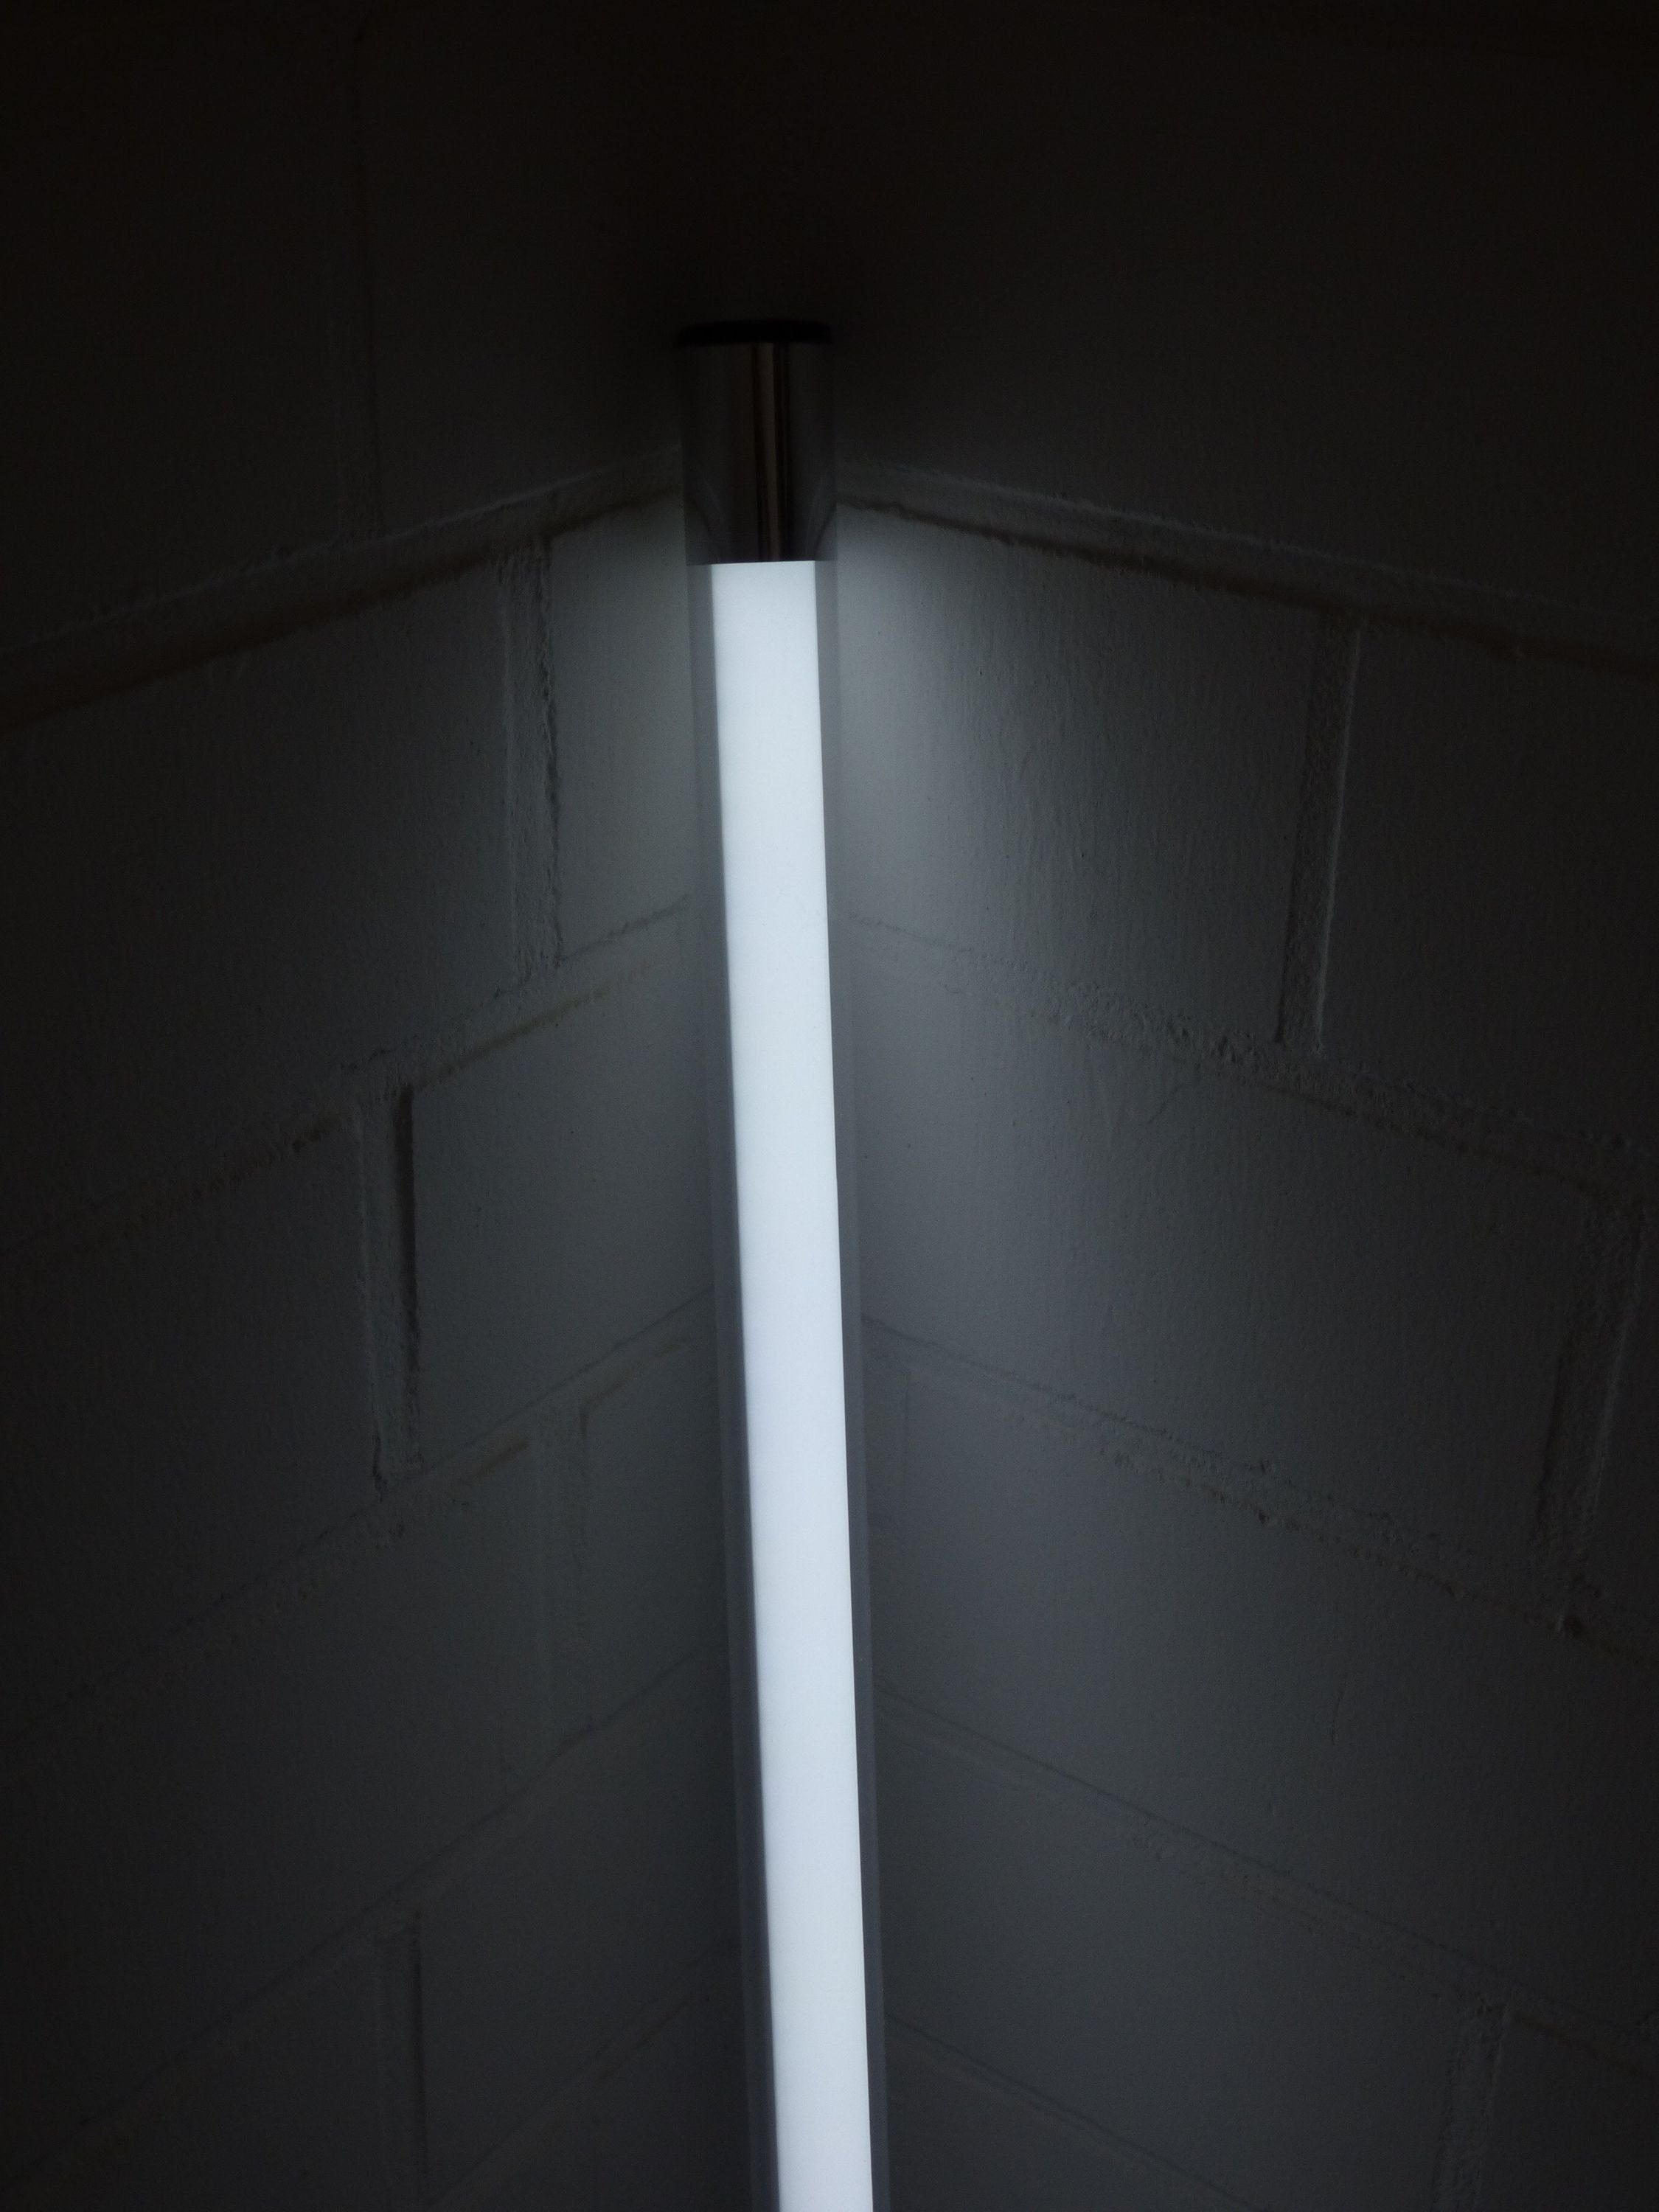 XENON LED Wandleuchte LED Leuchtstab 22 Watt kalt weiß 2250 Lumen 153 cm IP-20, Lieferung ohne Leuchtmittel., Xenon Warm Weiß